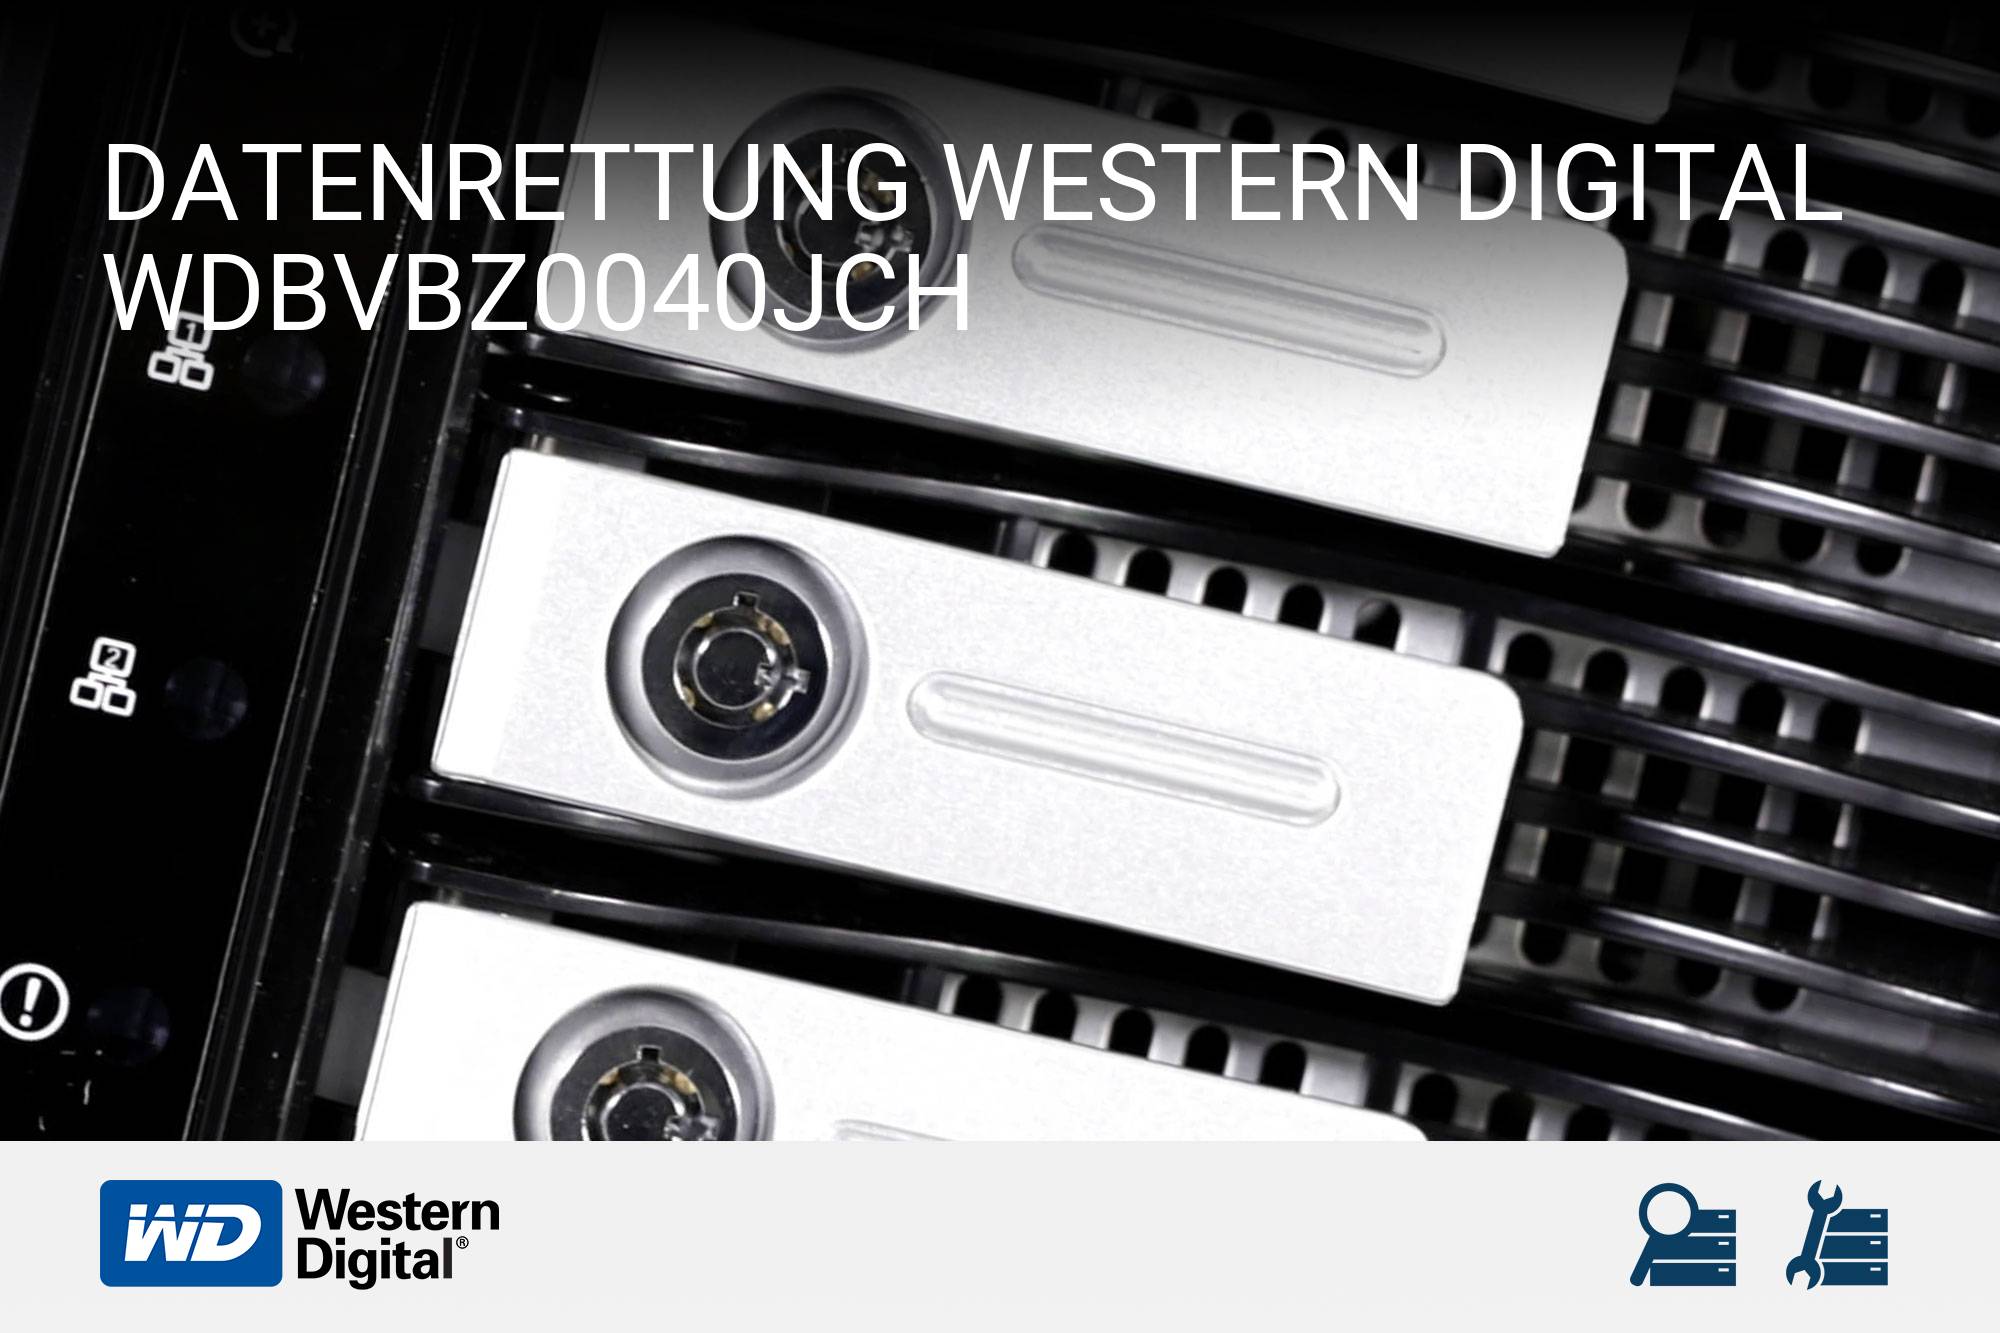 Western Digital WDBVBZ0040JCH